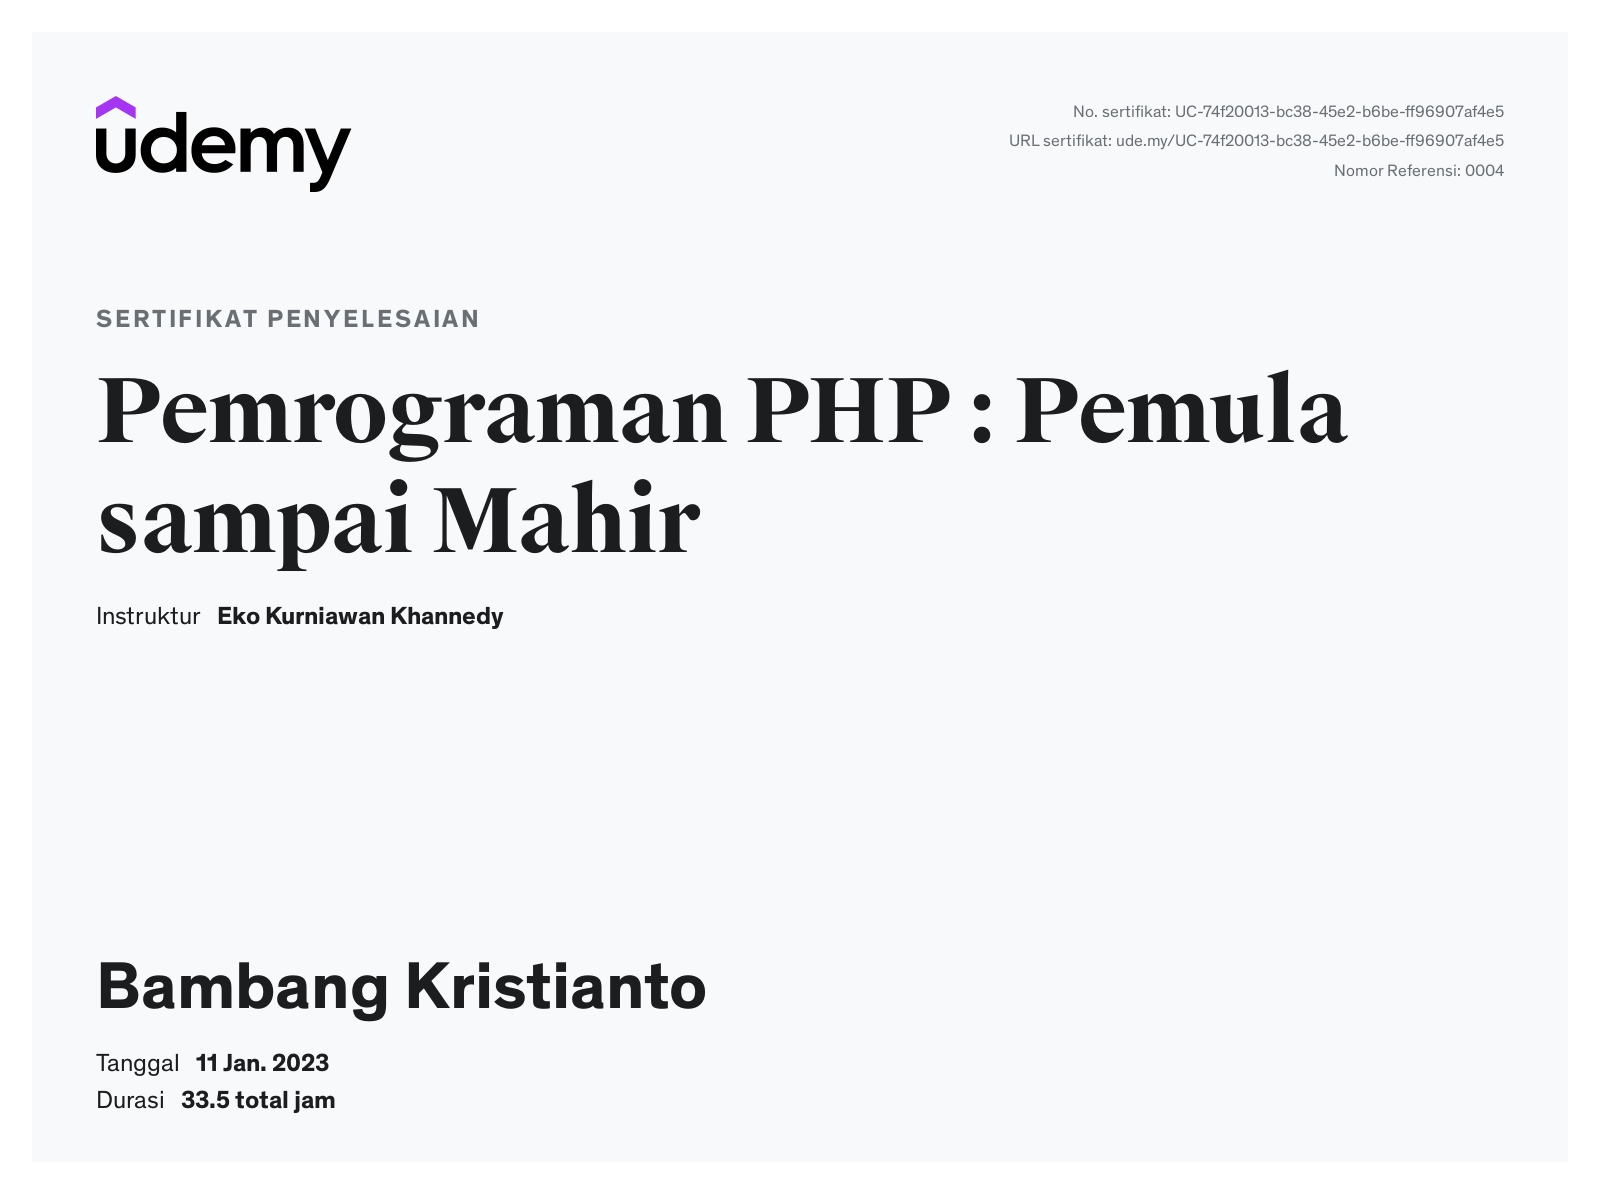 Sertifikat penyelesaian PHP Bambang Kristianto